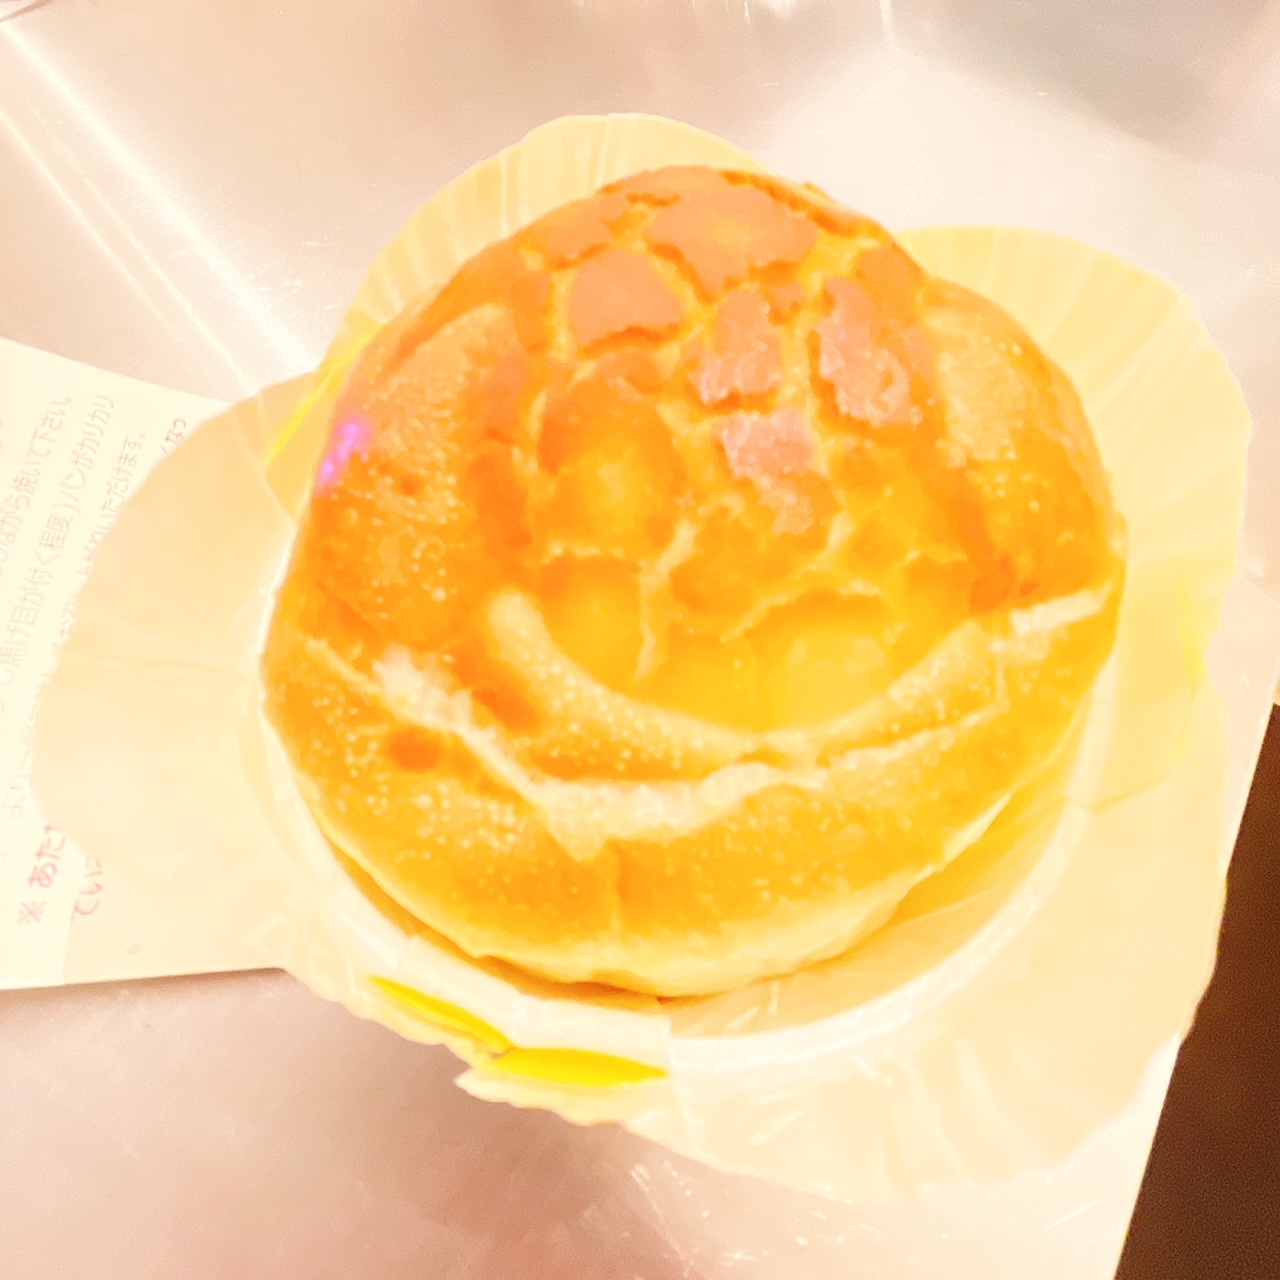 〈ロバ菓子司〉の「チーズフォンデューパン」